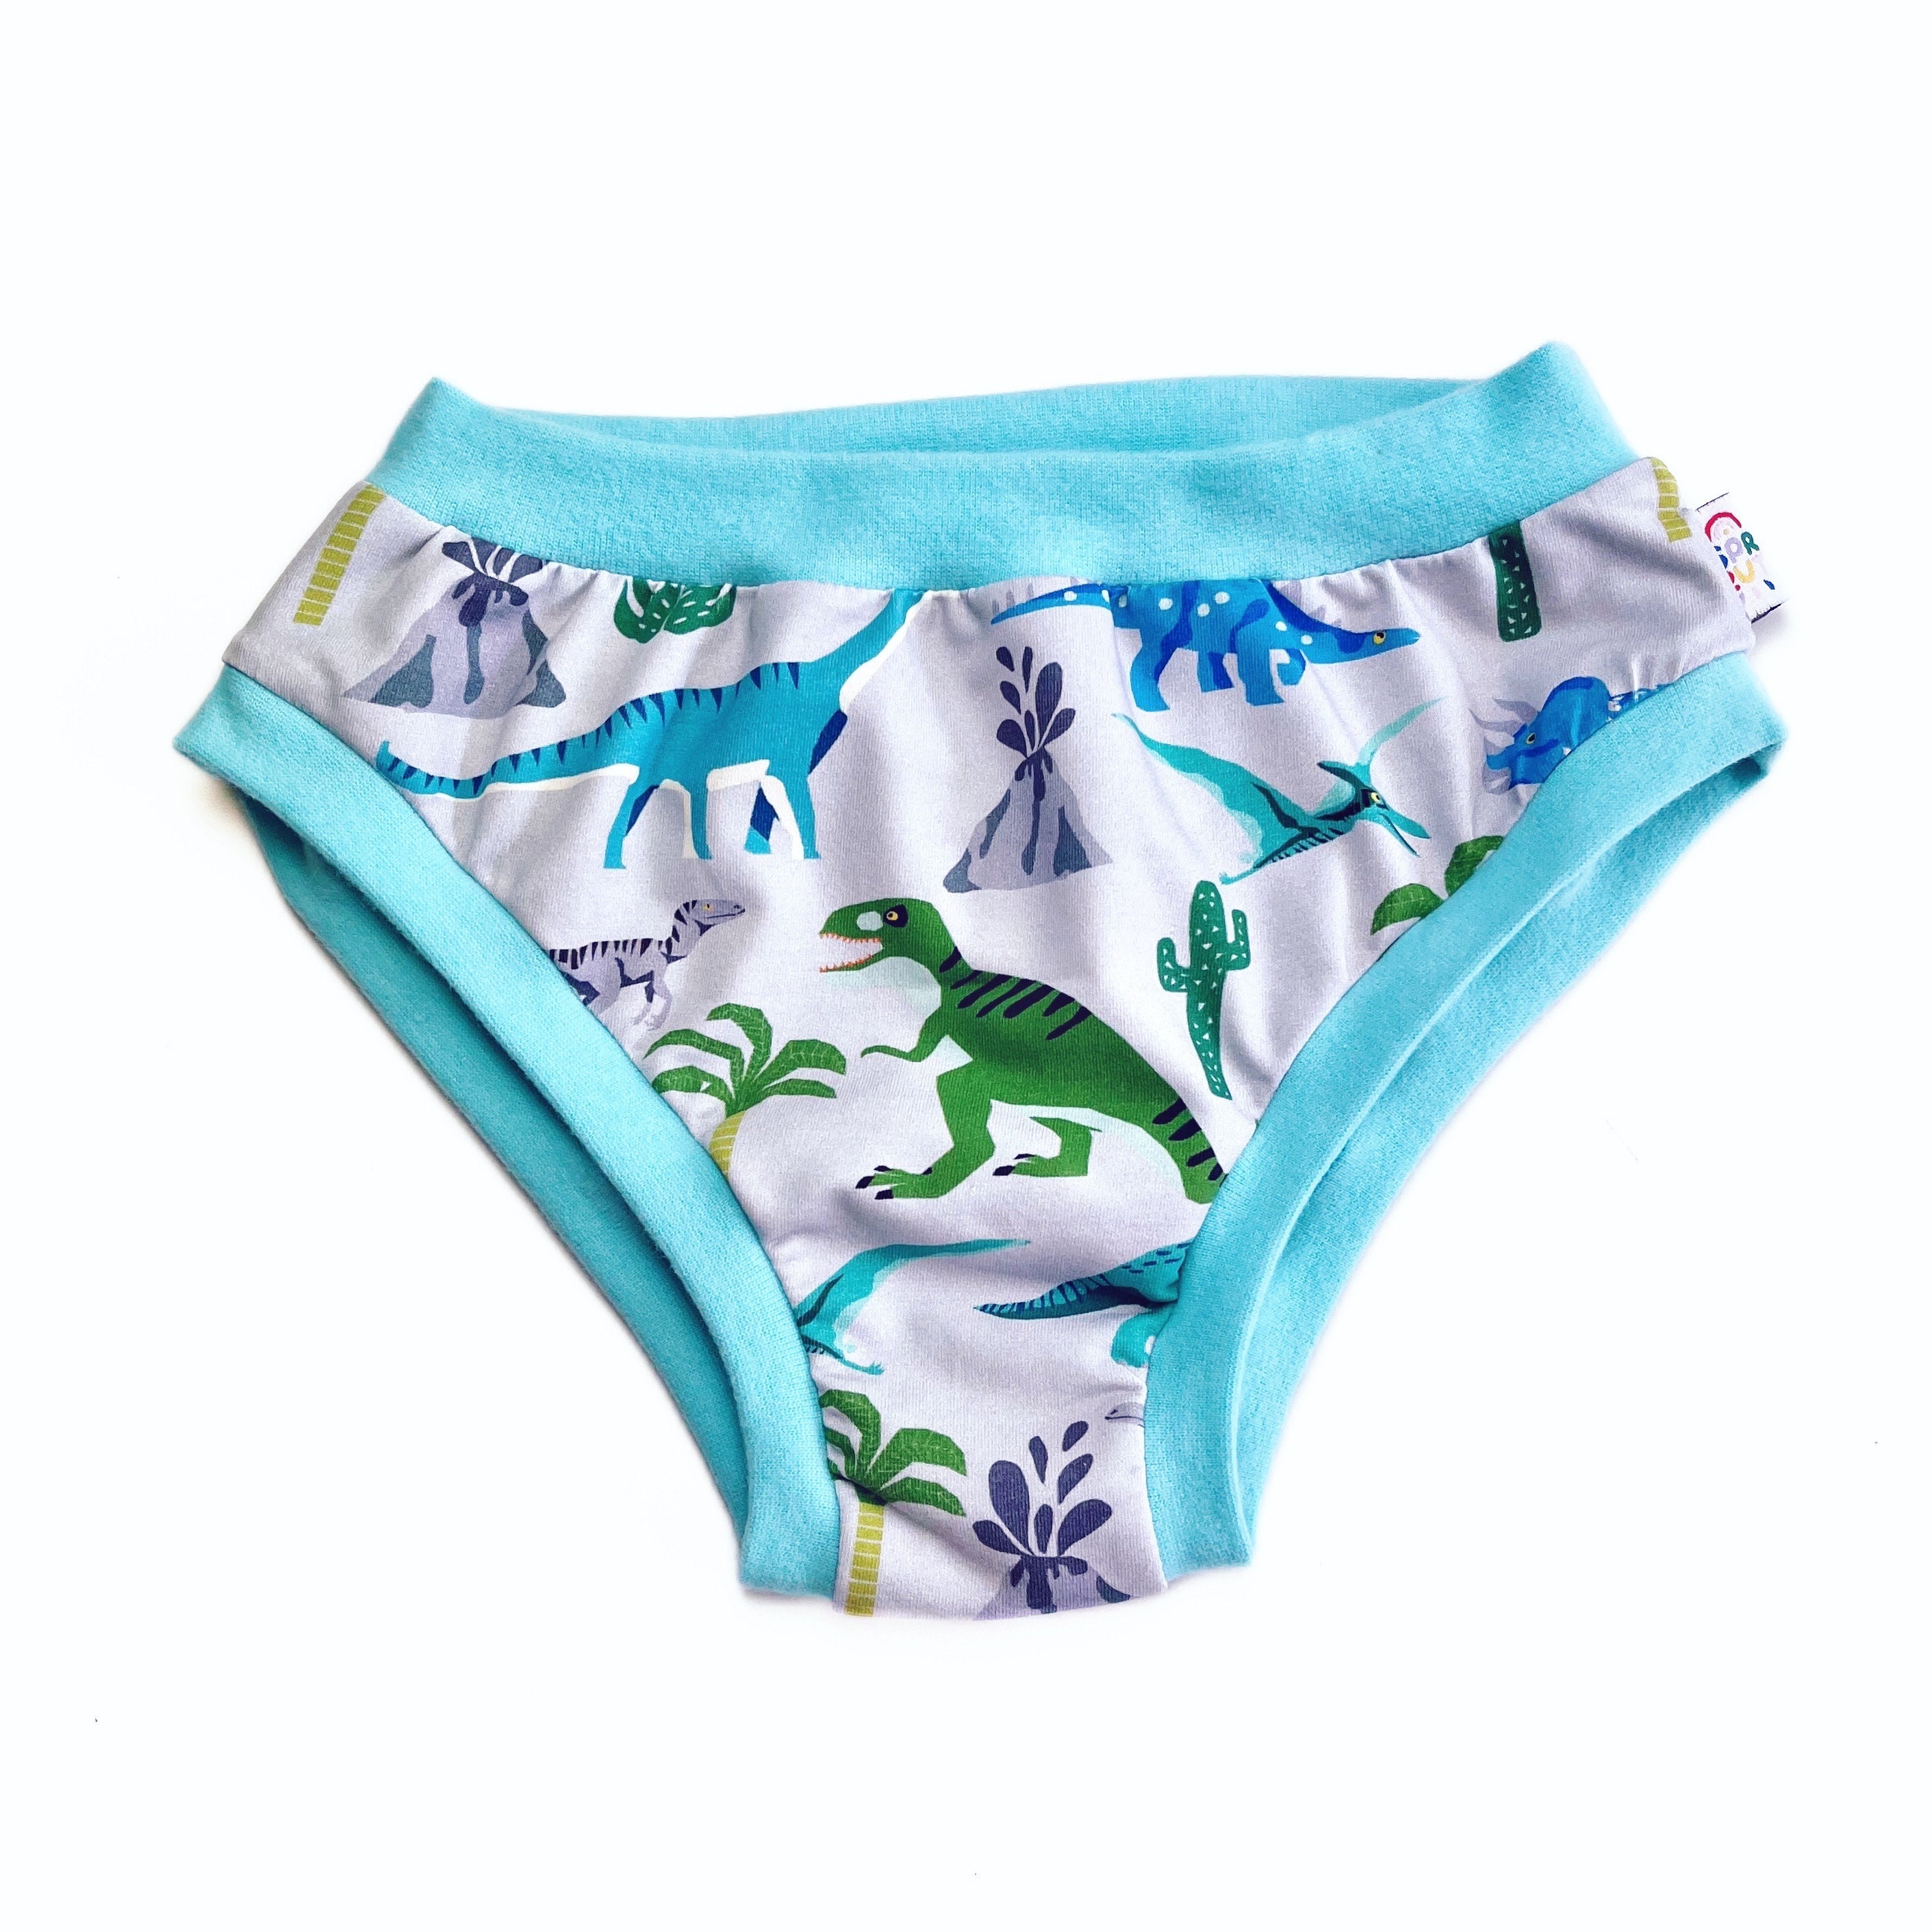 Penguin in the Desert Women's Briefs, Penguin Underwear, Penguin Panties,  Gift for Her, Women's Underwear, Cute Underwear 